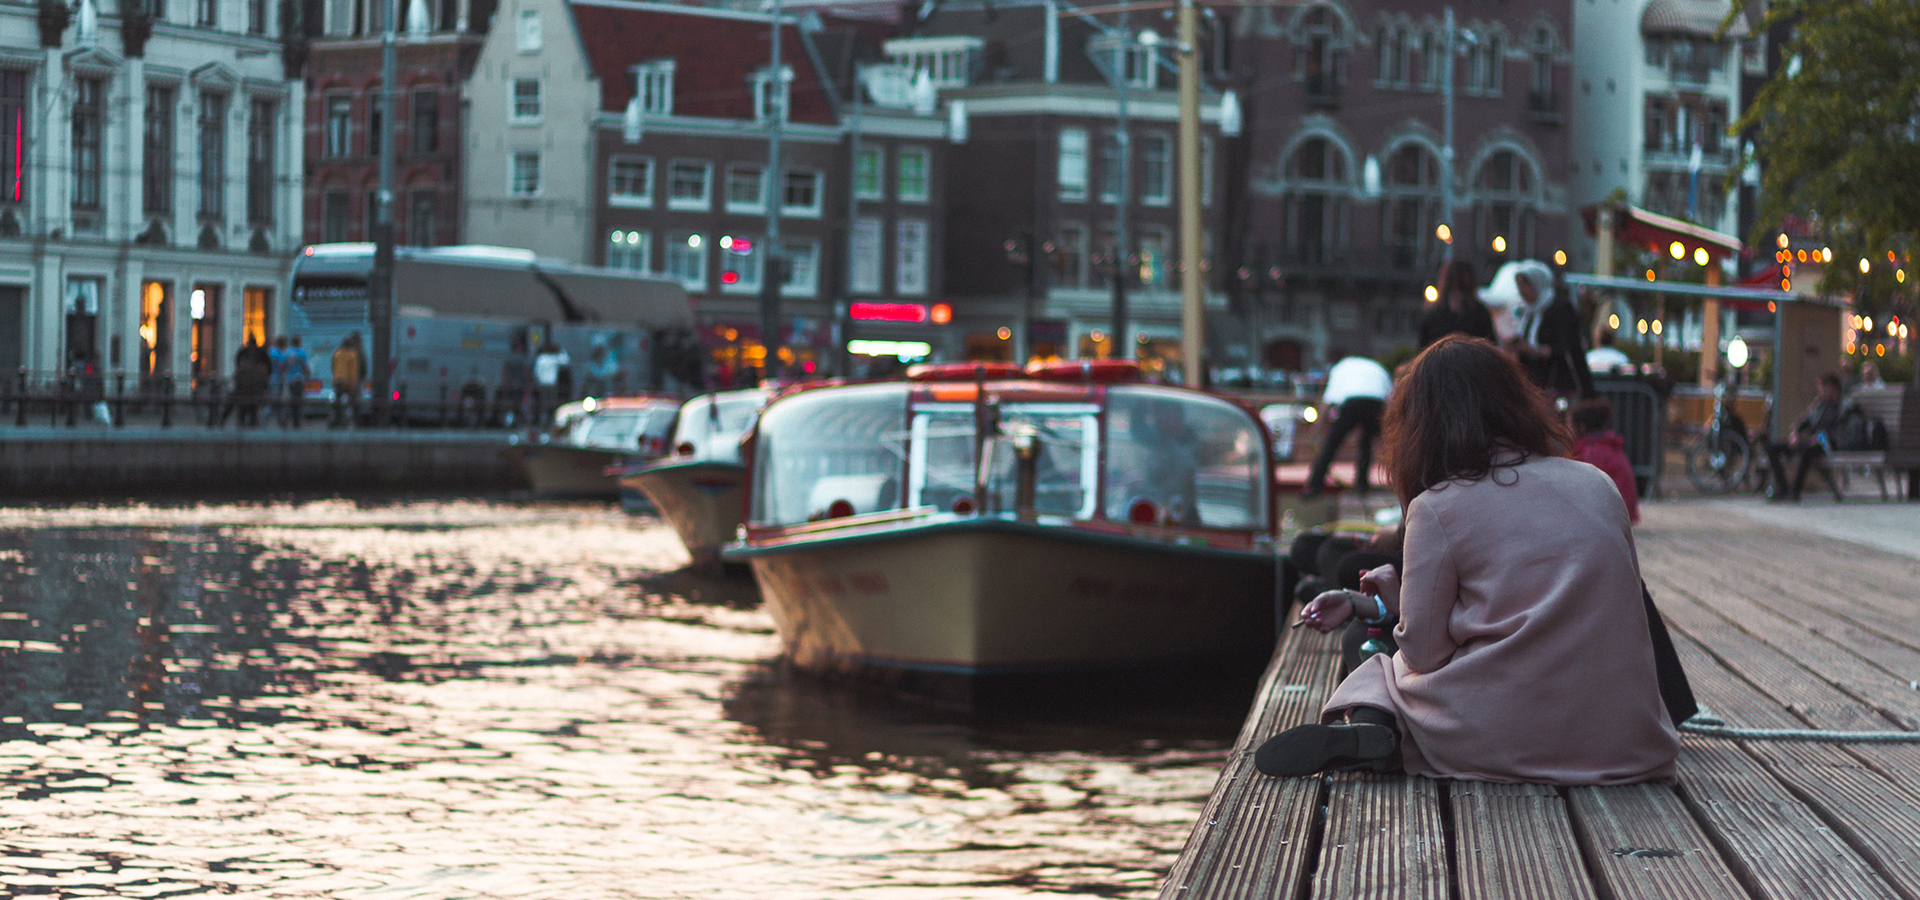 канал с лодочкой в нидерландах и девушка-экспат сидит на набережной